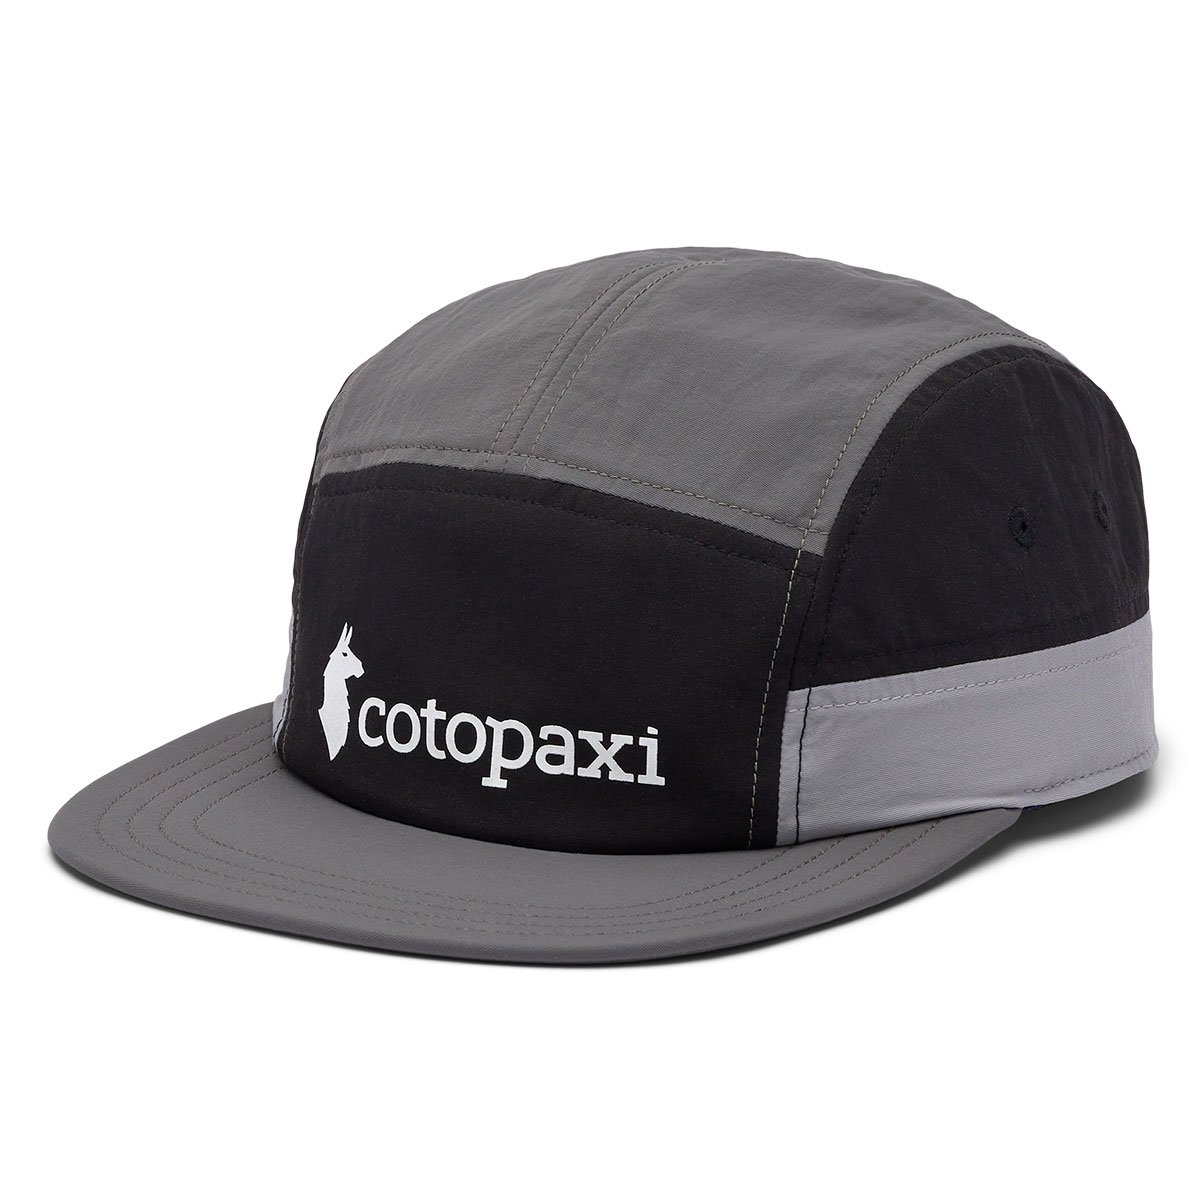 Cotopaxi Tech 5 - Panel Hat